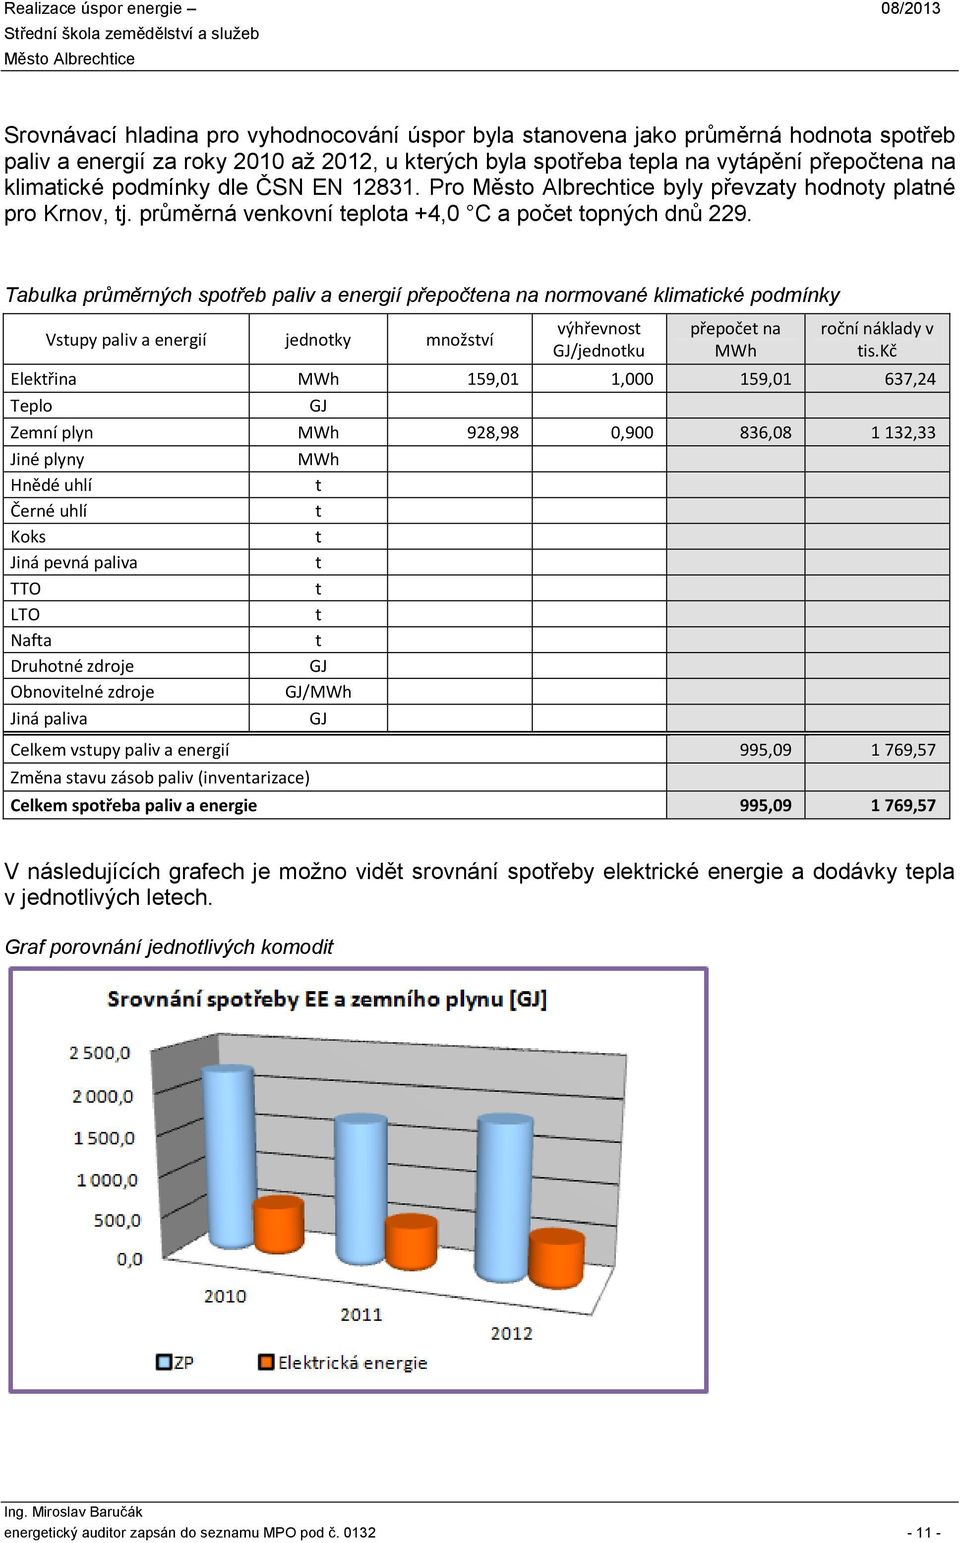 Tabulka průměrných spořeb paliv a energií přepočena na normované klimaické podmínky Vsupy paliv a energií jednoky množsví výhřevnos GJ/jednoku přepoče na MWh roční náklady v is.